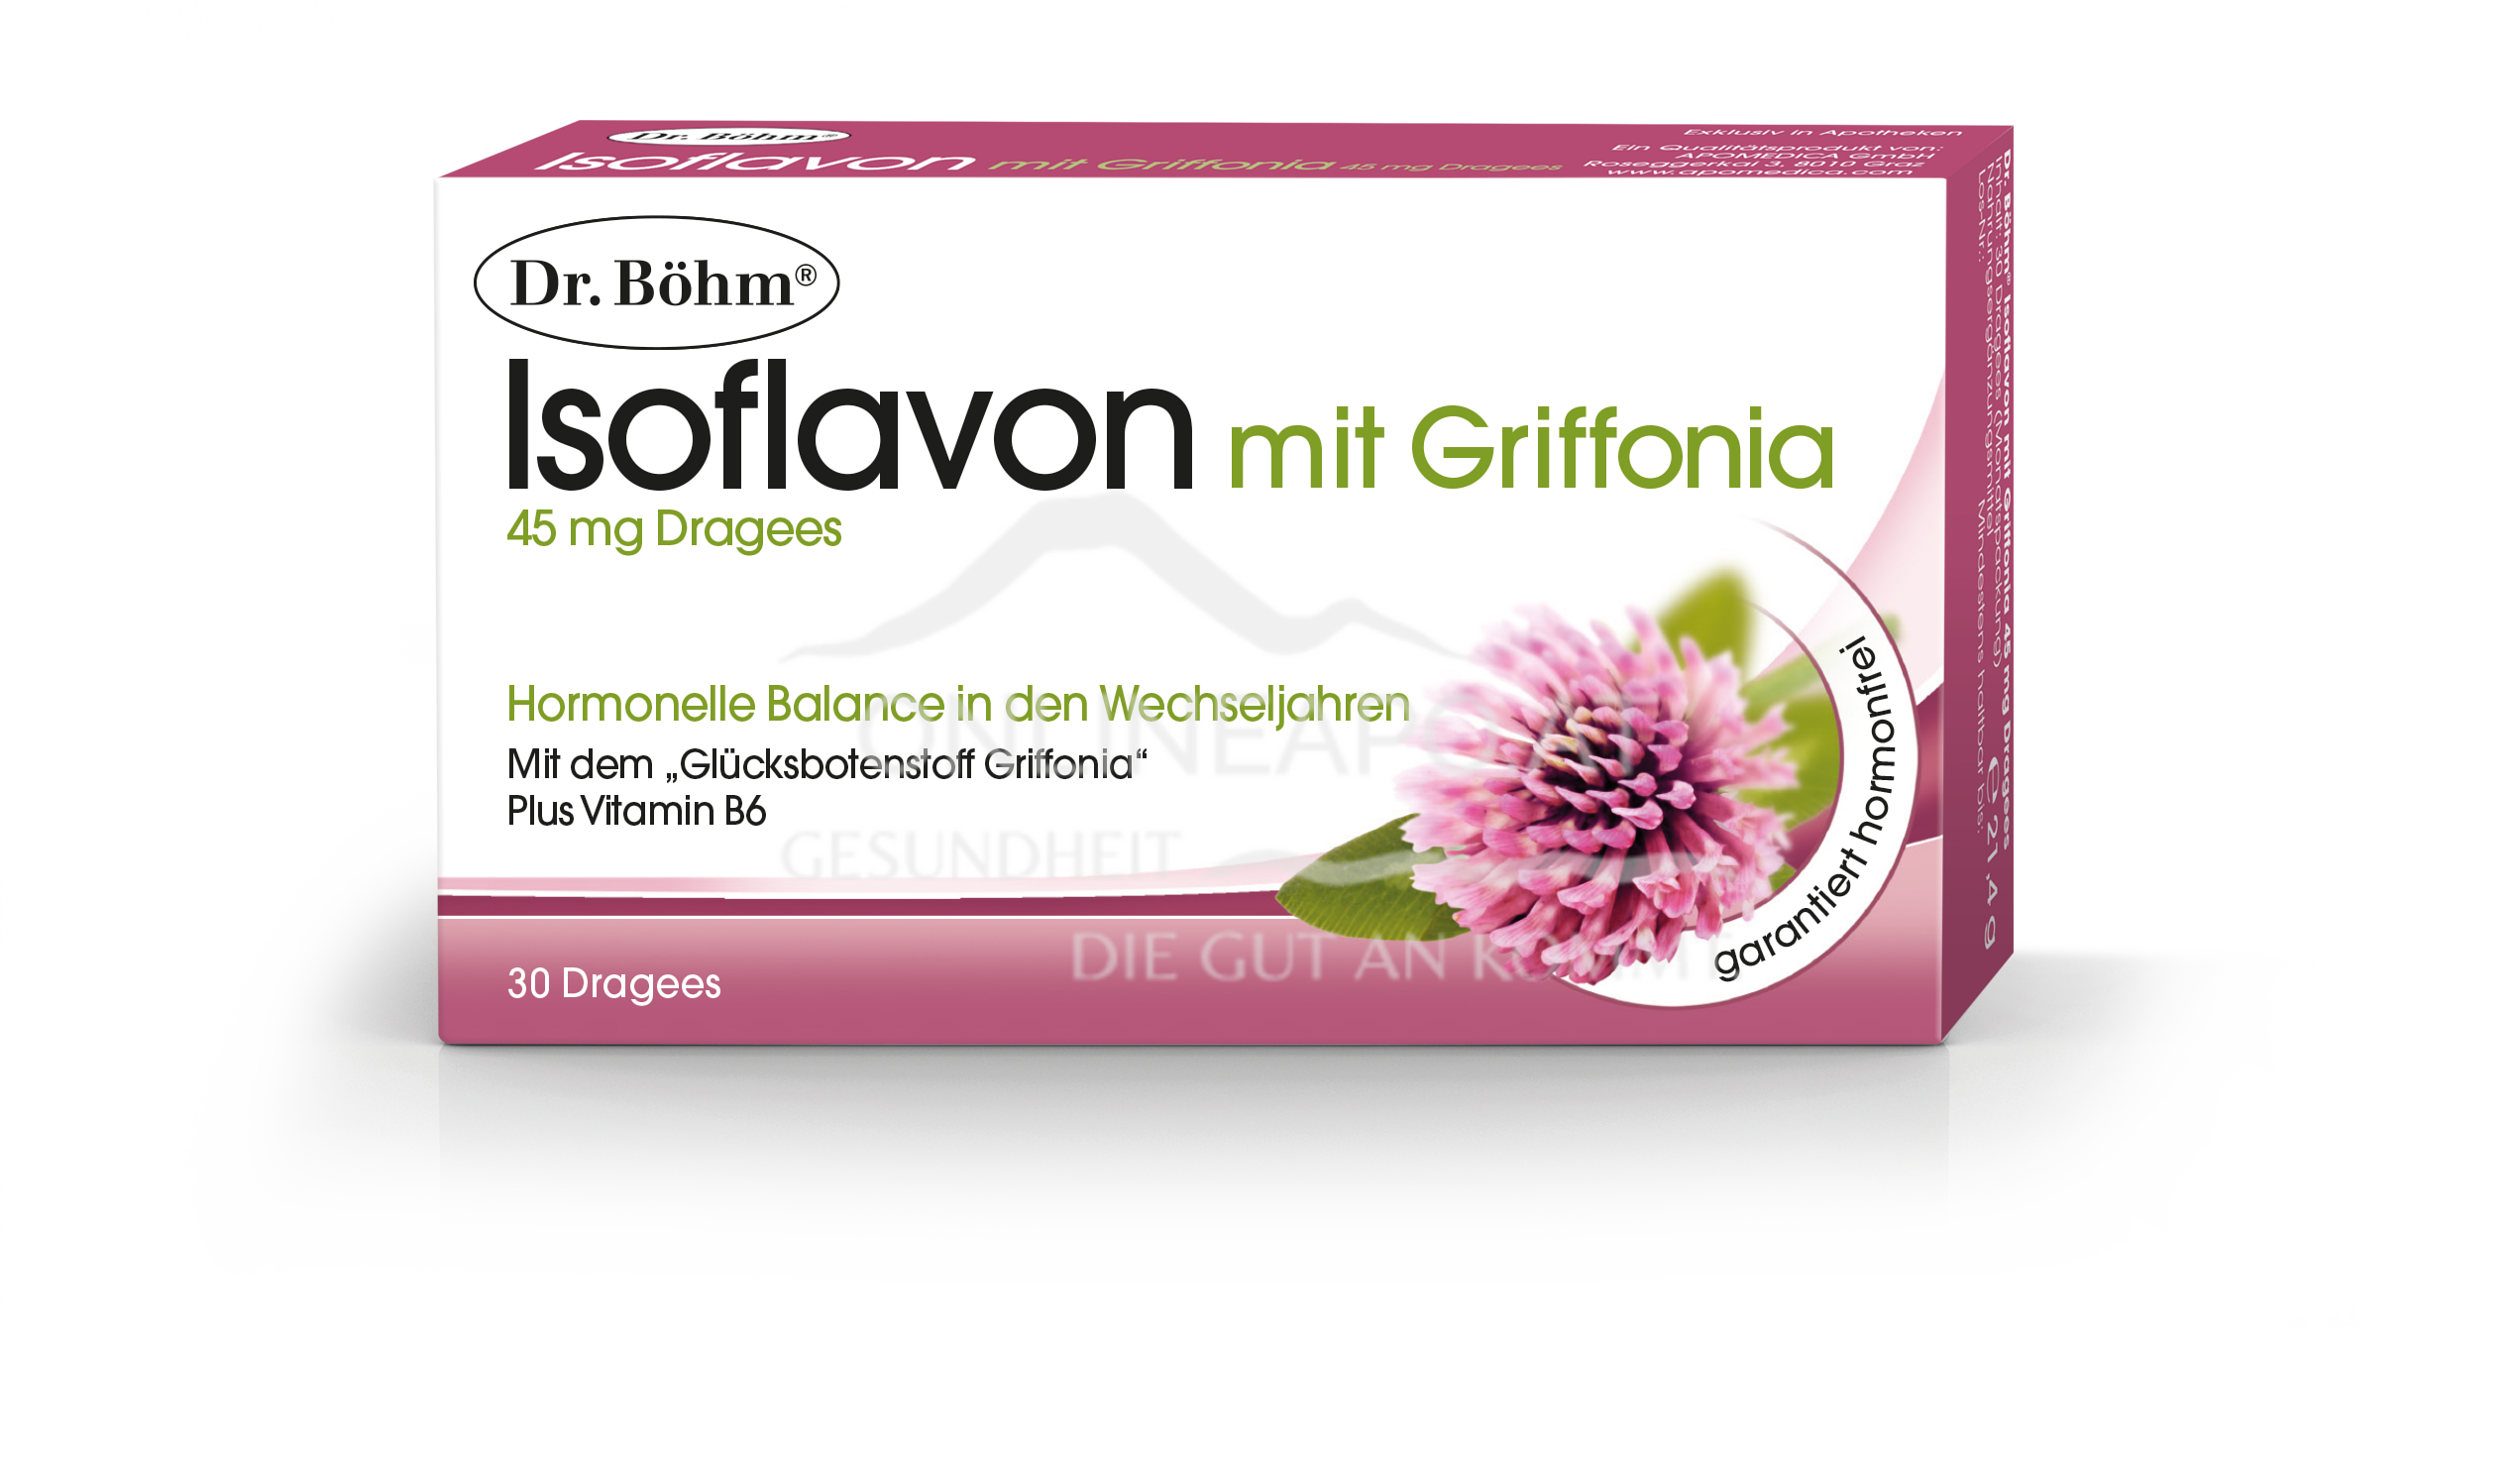 Dr. Böhm® Isoflavon mit Griffonia 45mg